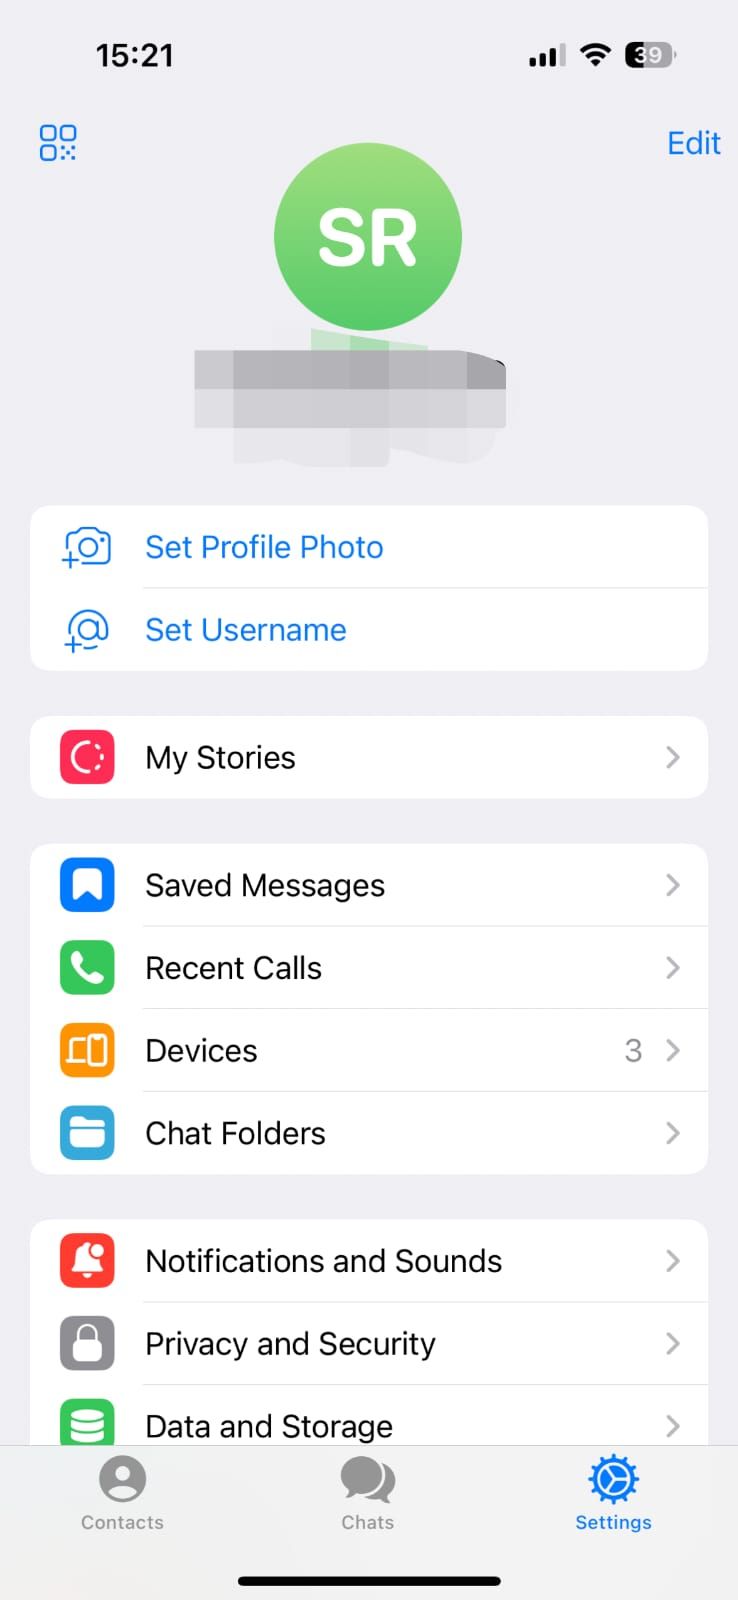 Captura de tela mostrando o menu de configurações no aplicativo iPhone Telegram